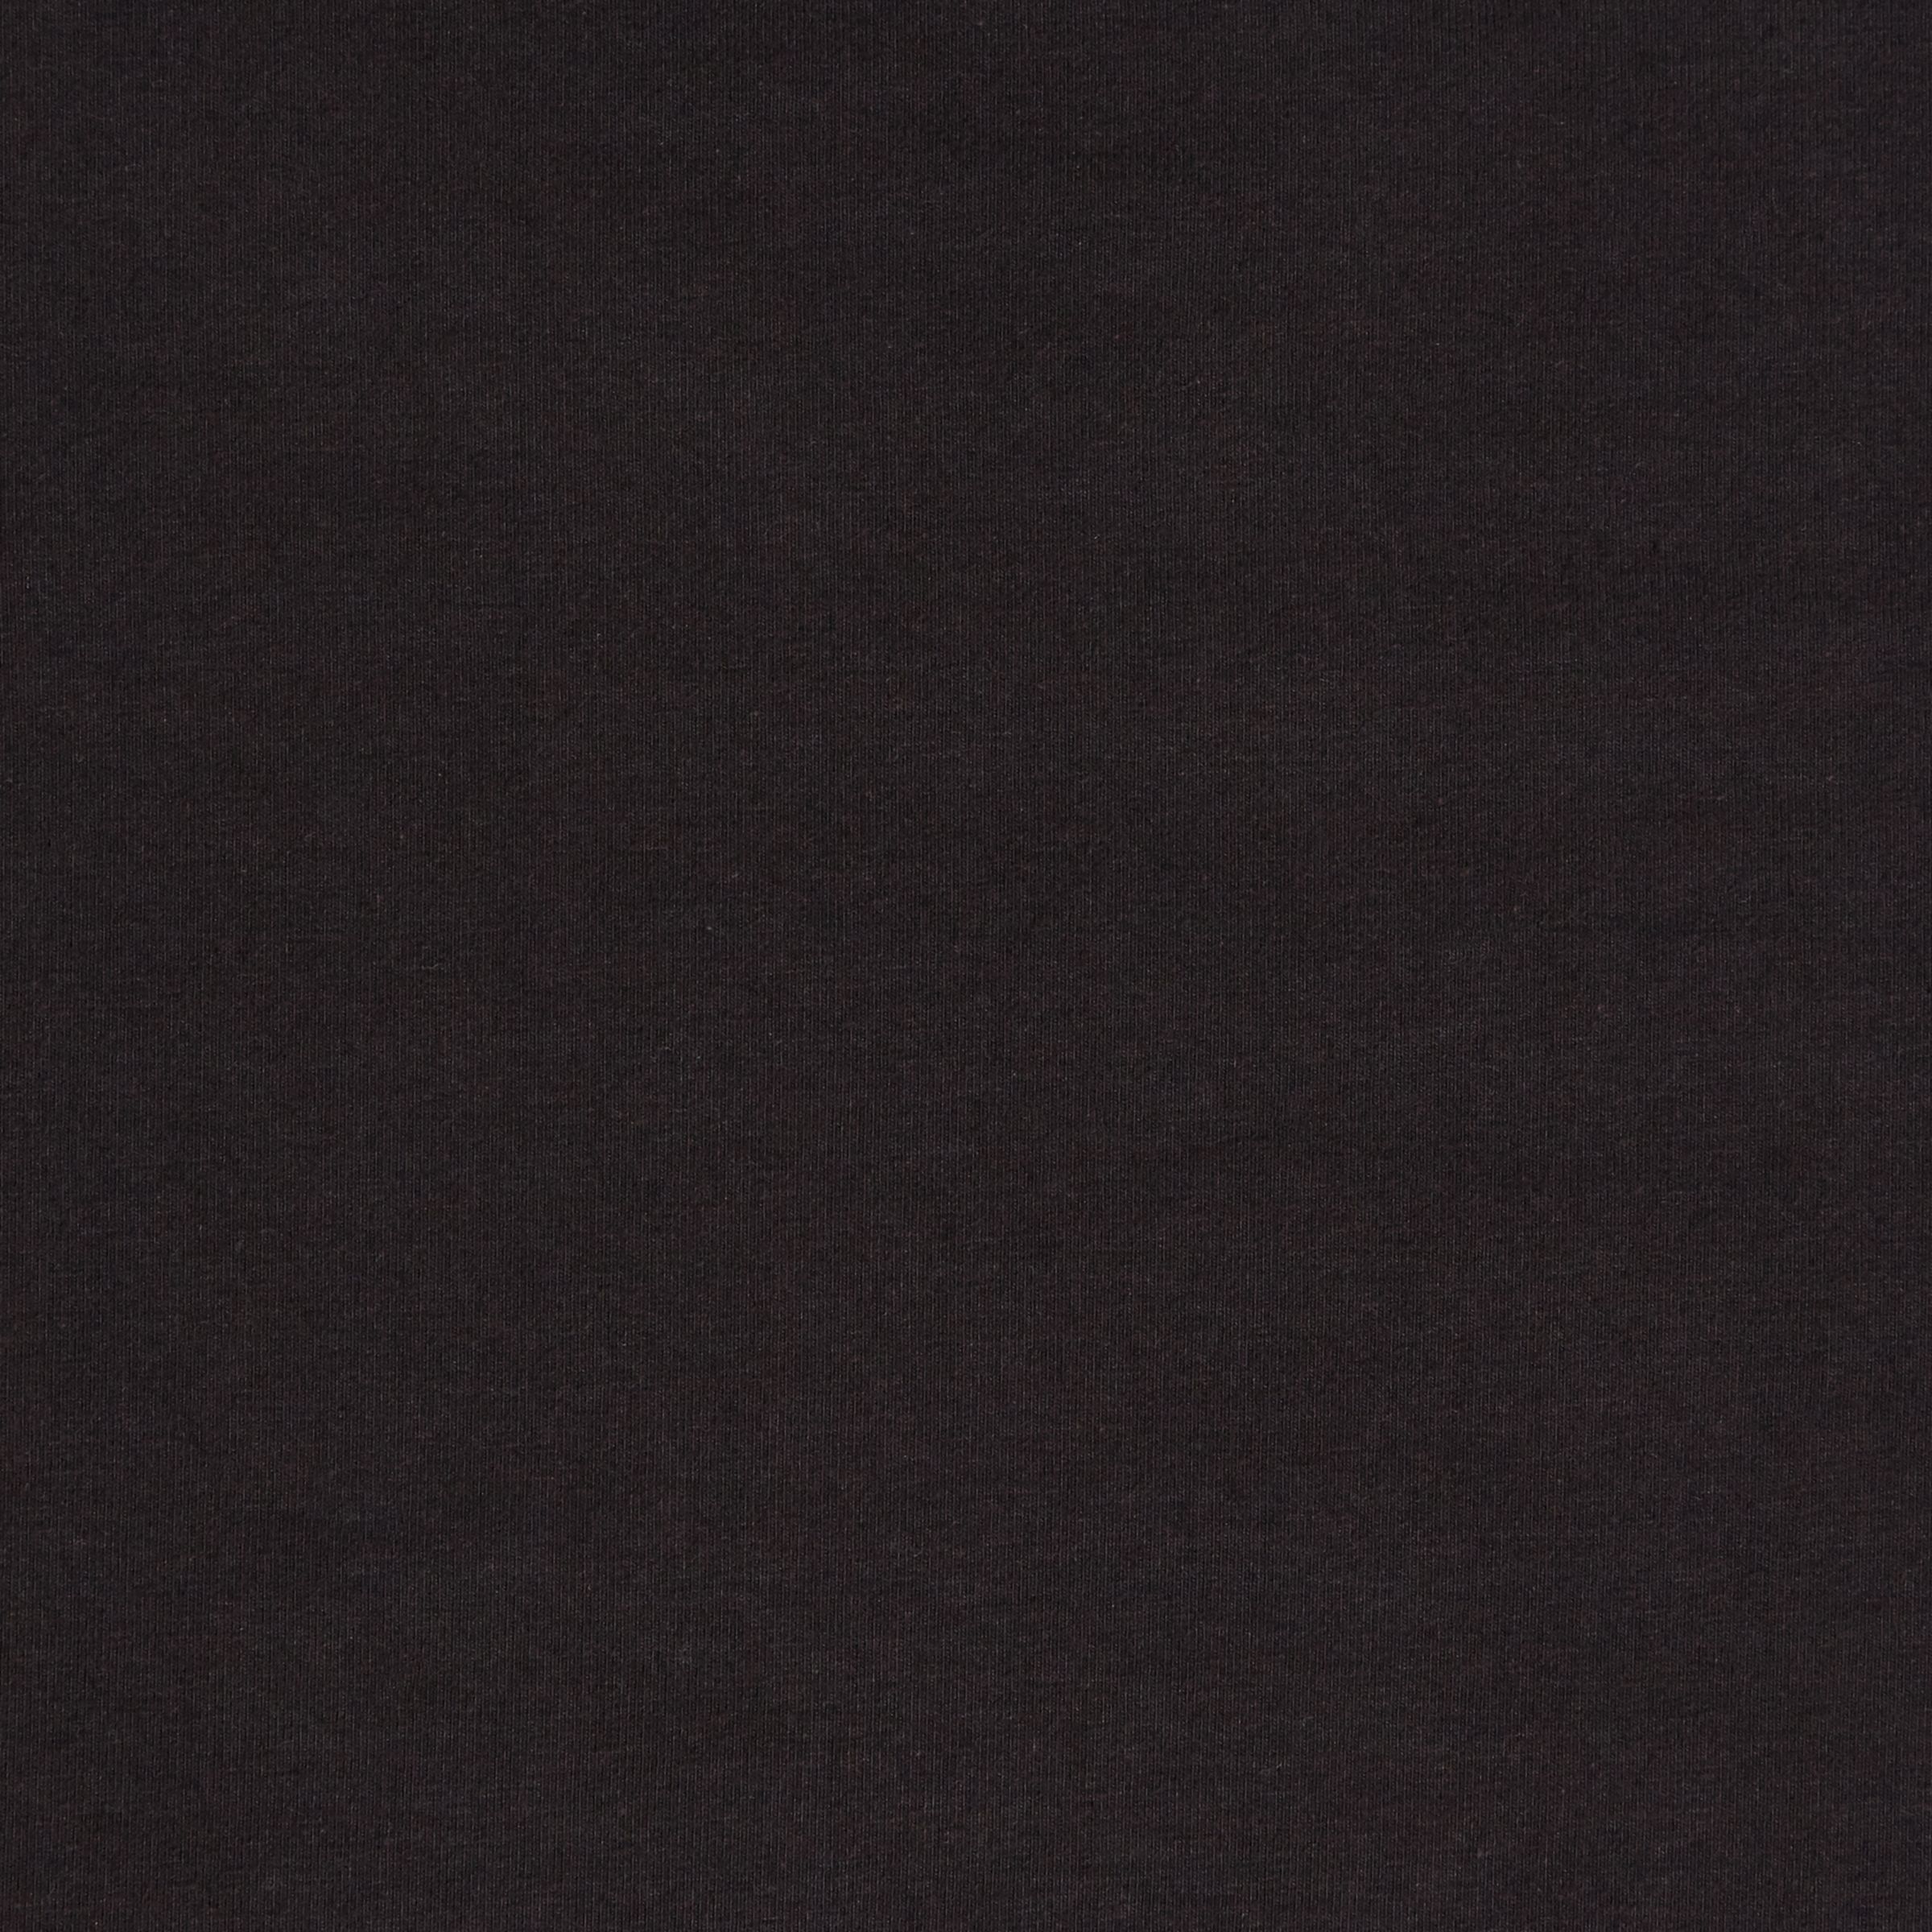 black jersey fabric